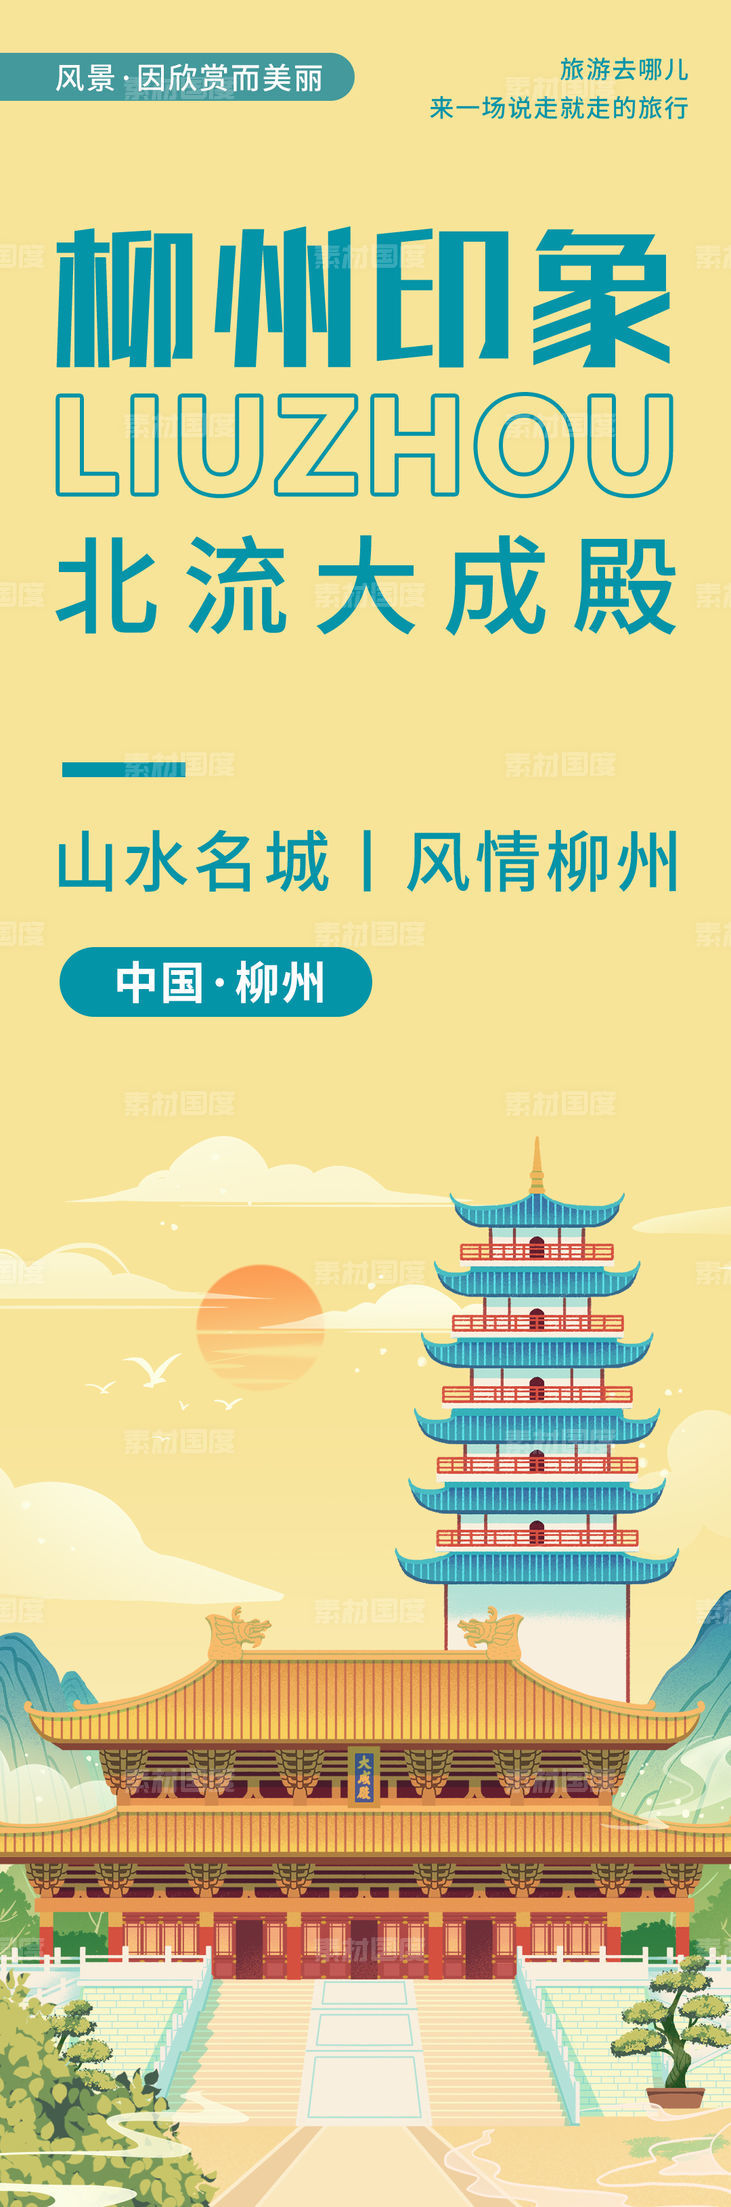 柳州印象城市旅游海报